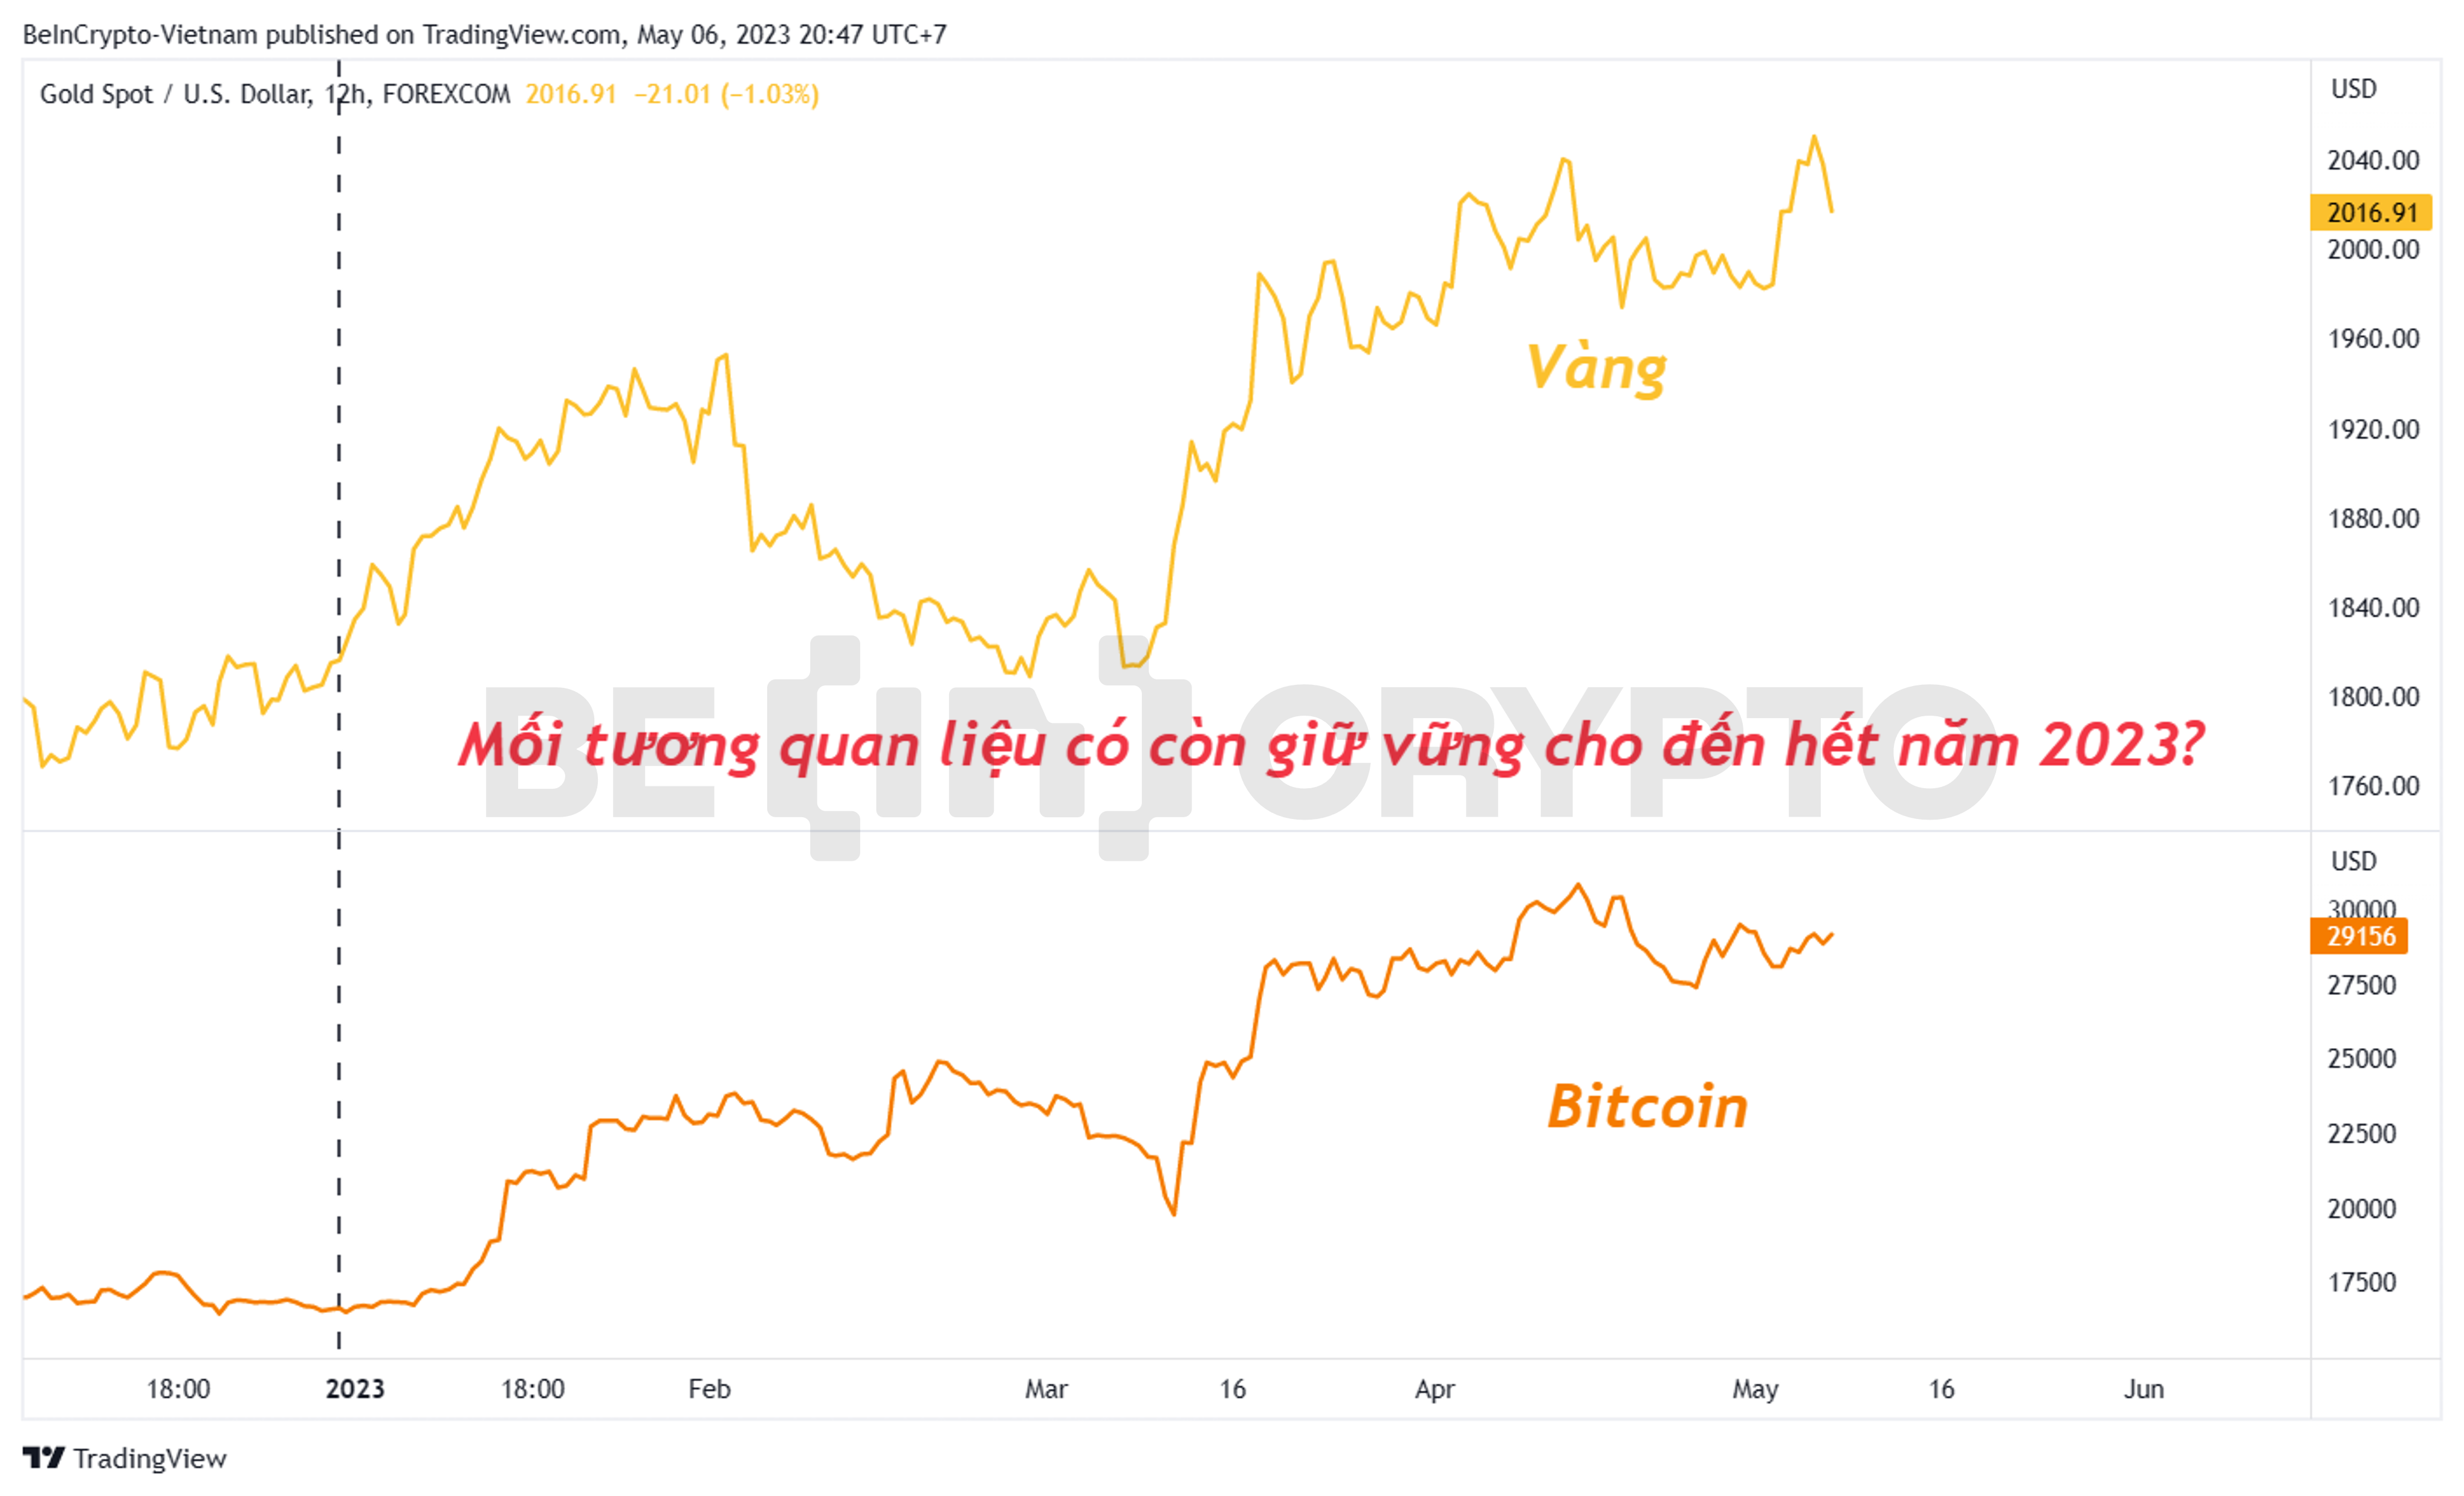 Tương quan giữa vàng và Bitcoin từ đầu năm 2023 đến nay.